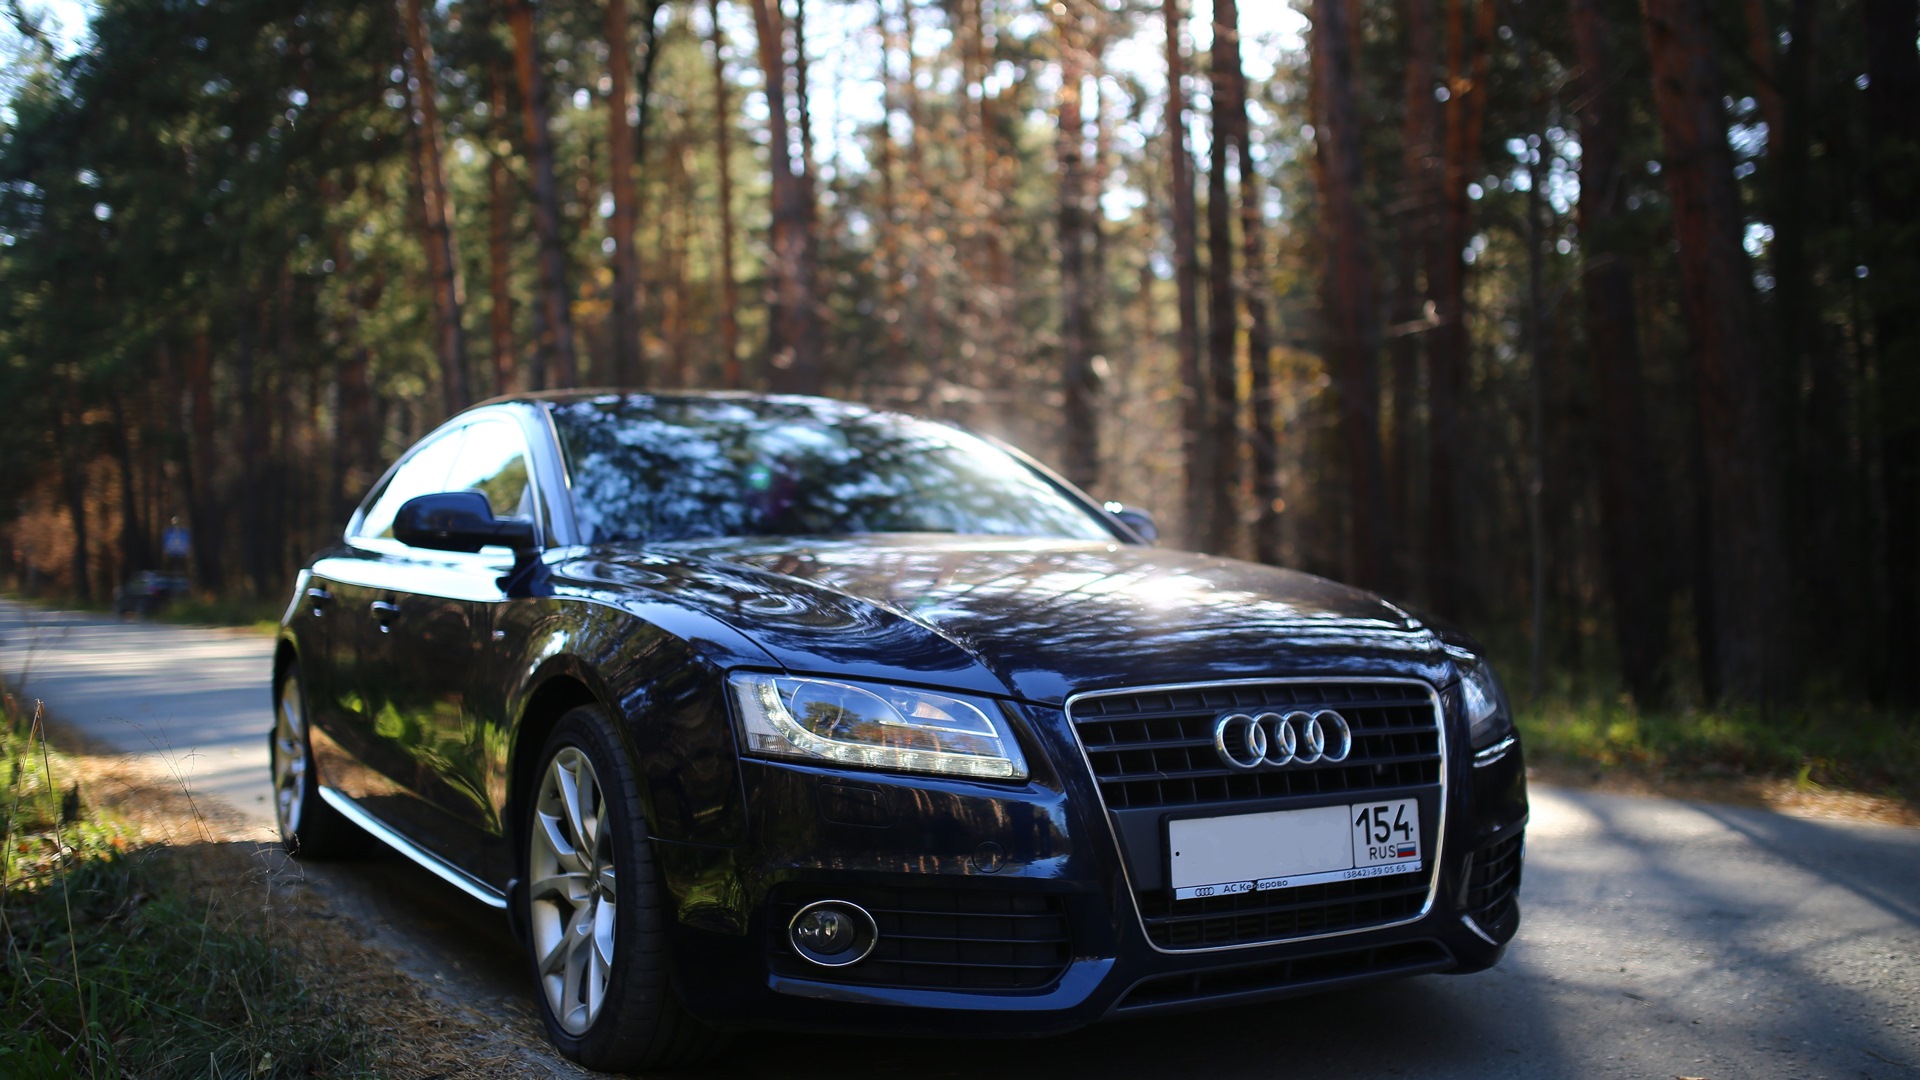 Audi новосибирск. Audi a5 2010 синяя. Audi a5 темно синий. Ауди а5 темно синяя. Audi a5 2010 темно синий.